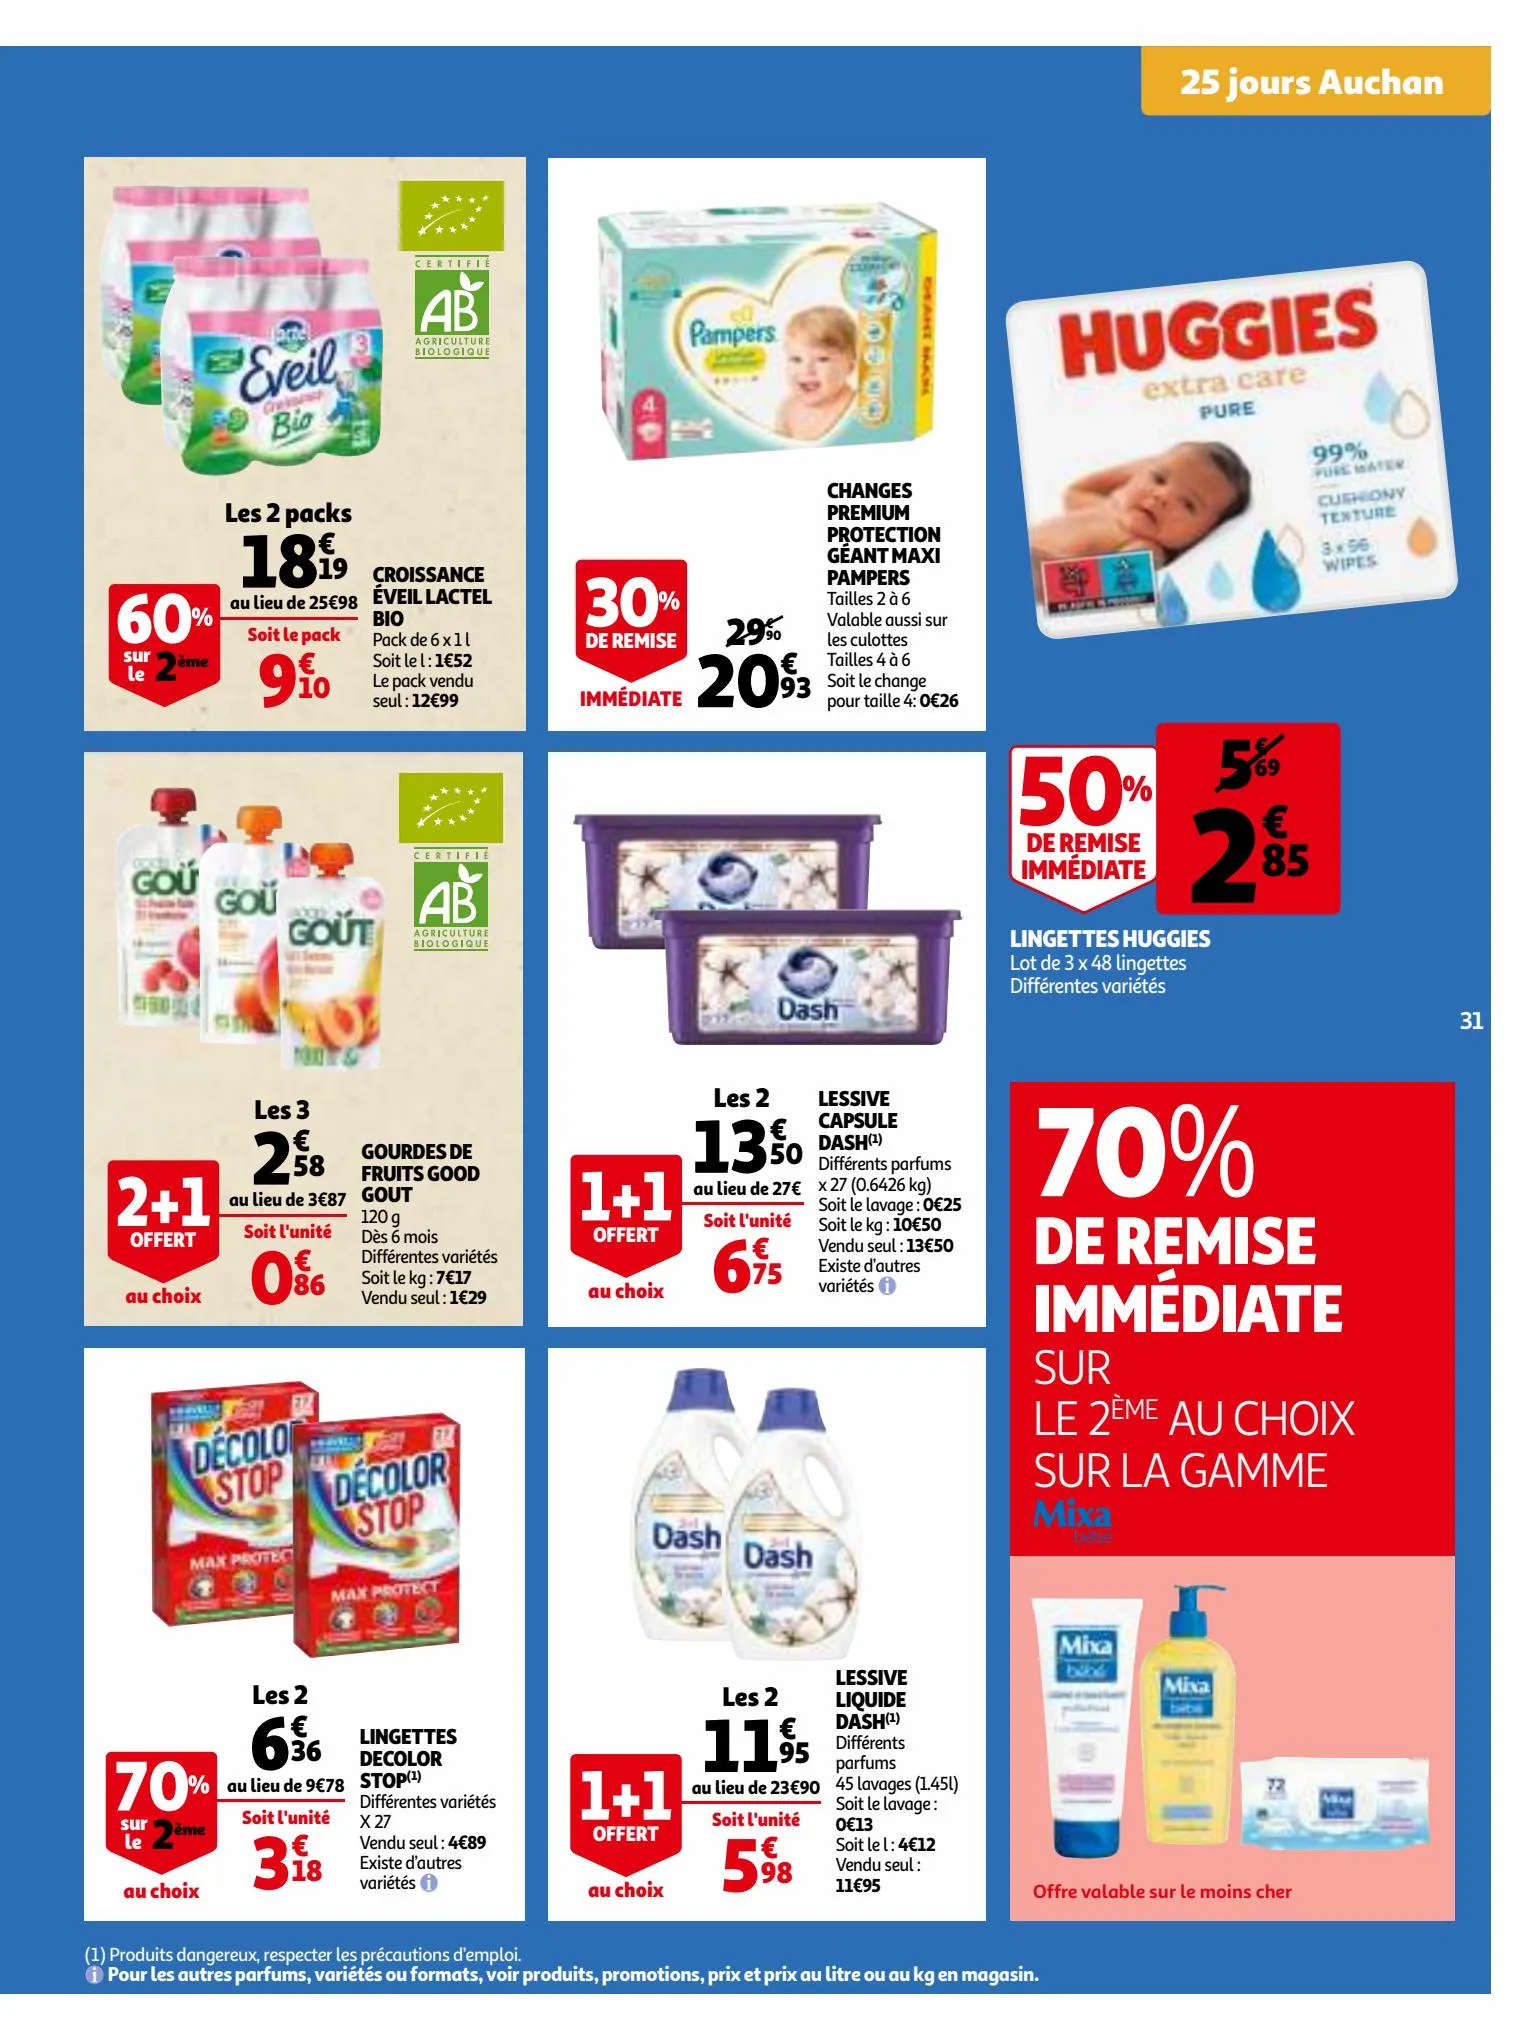 Catalogue 25 Jours Auchan, page 00031